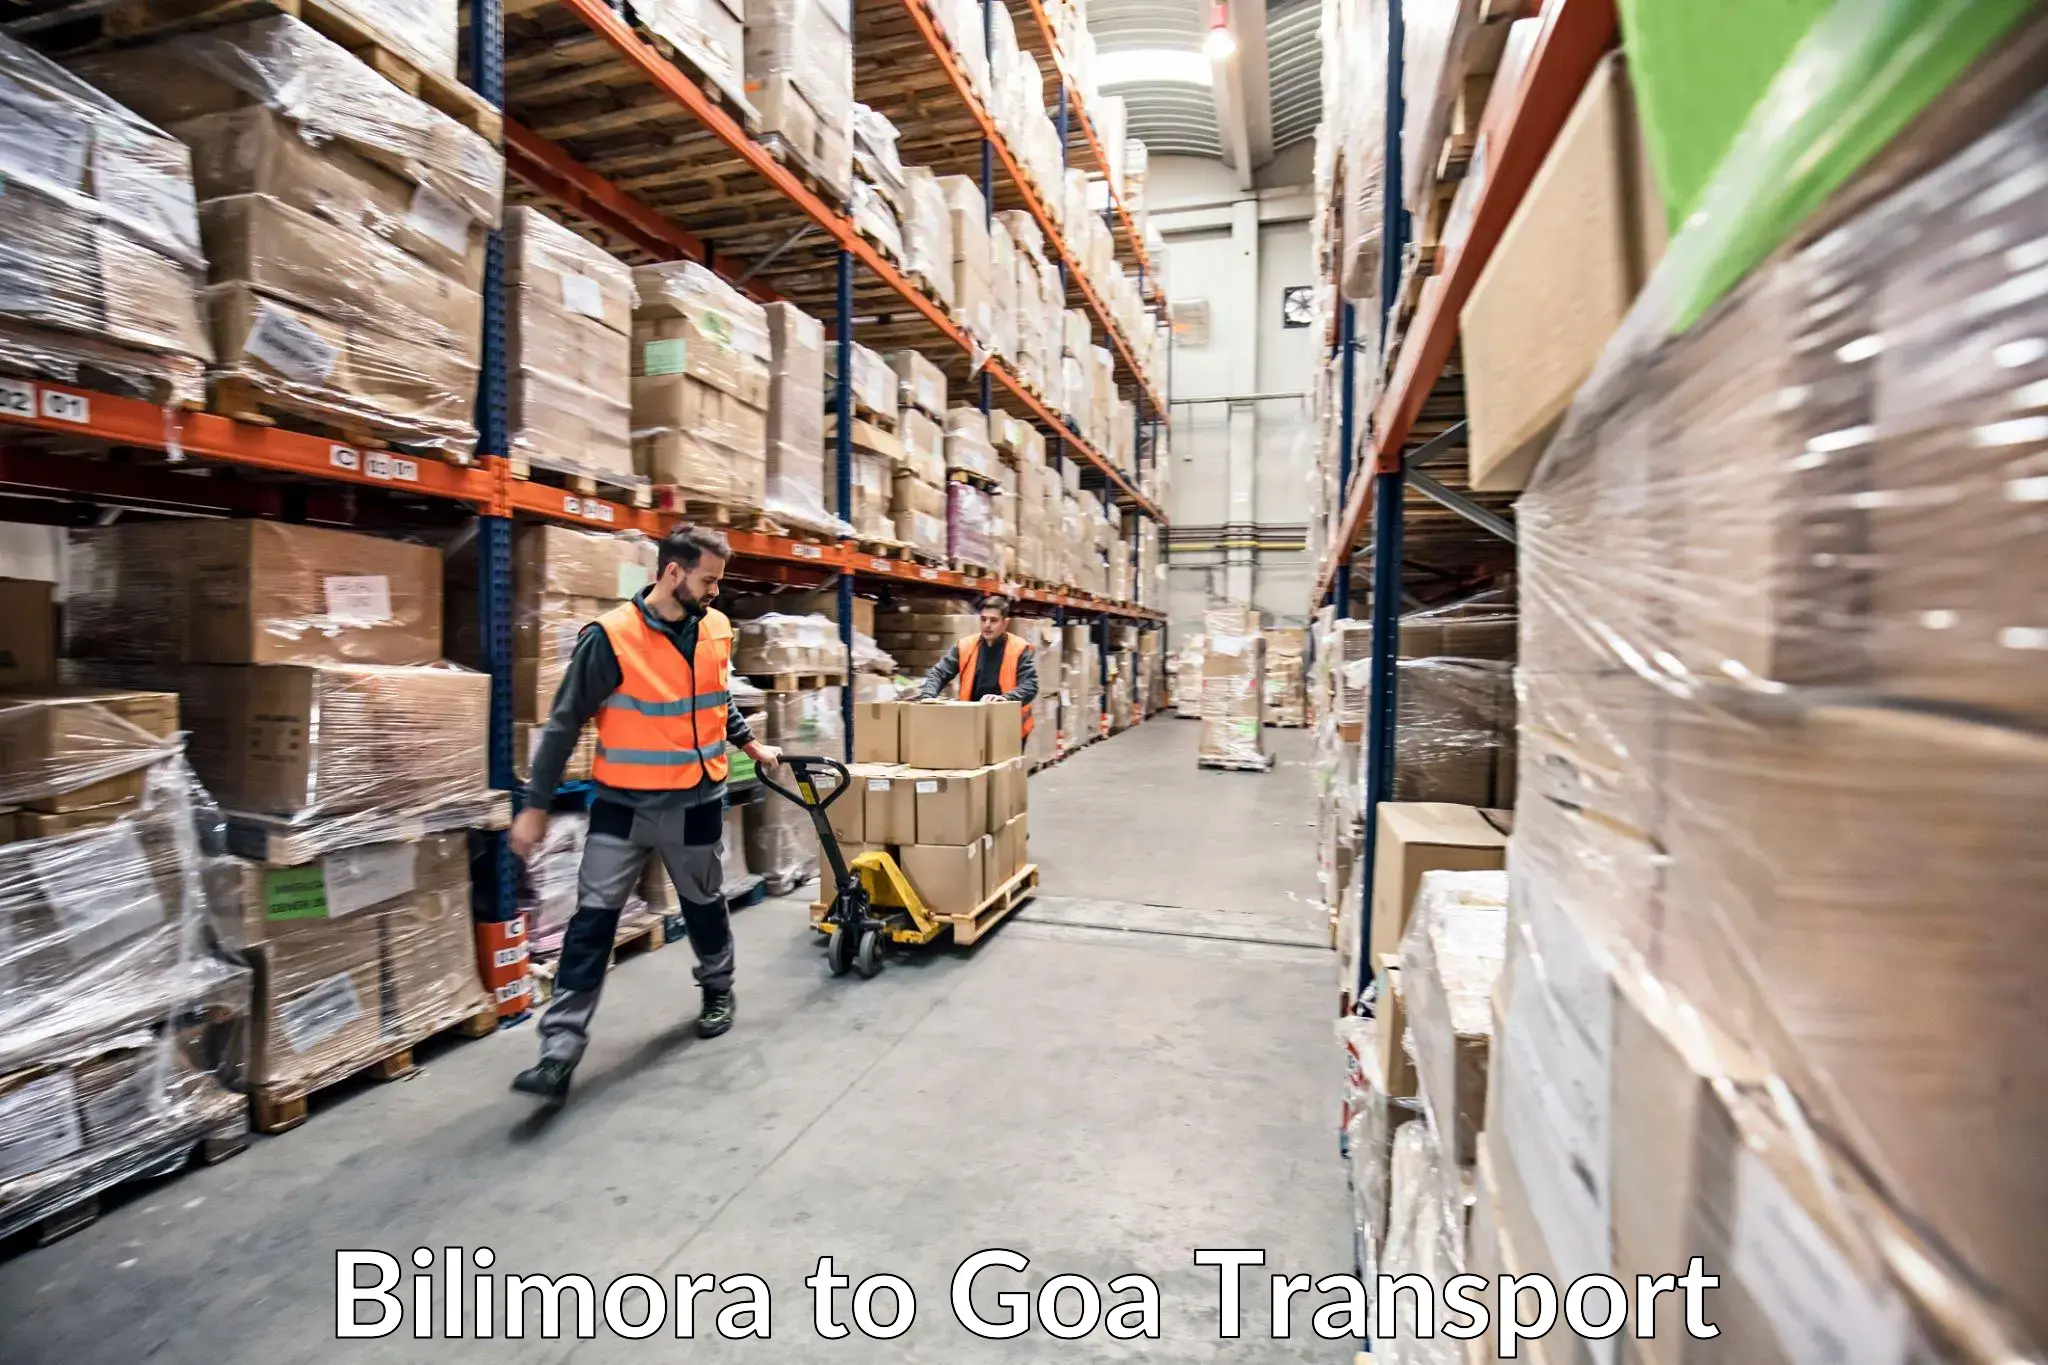 Furniture transport service Bilimora to Vasco da Gama